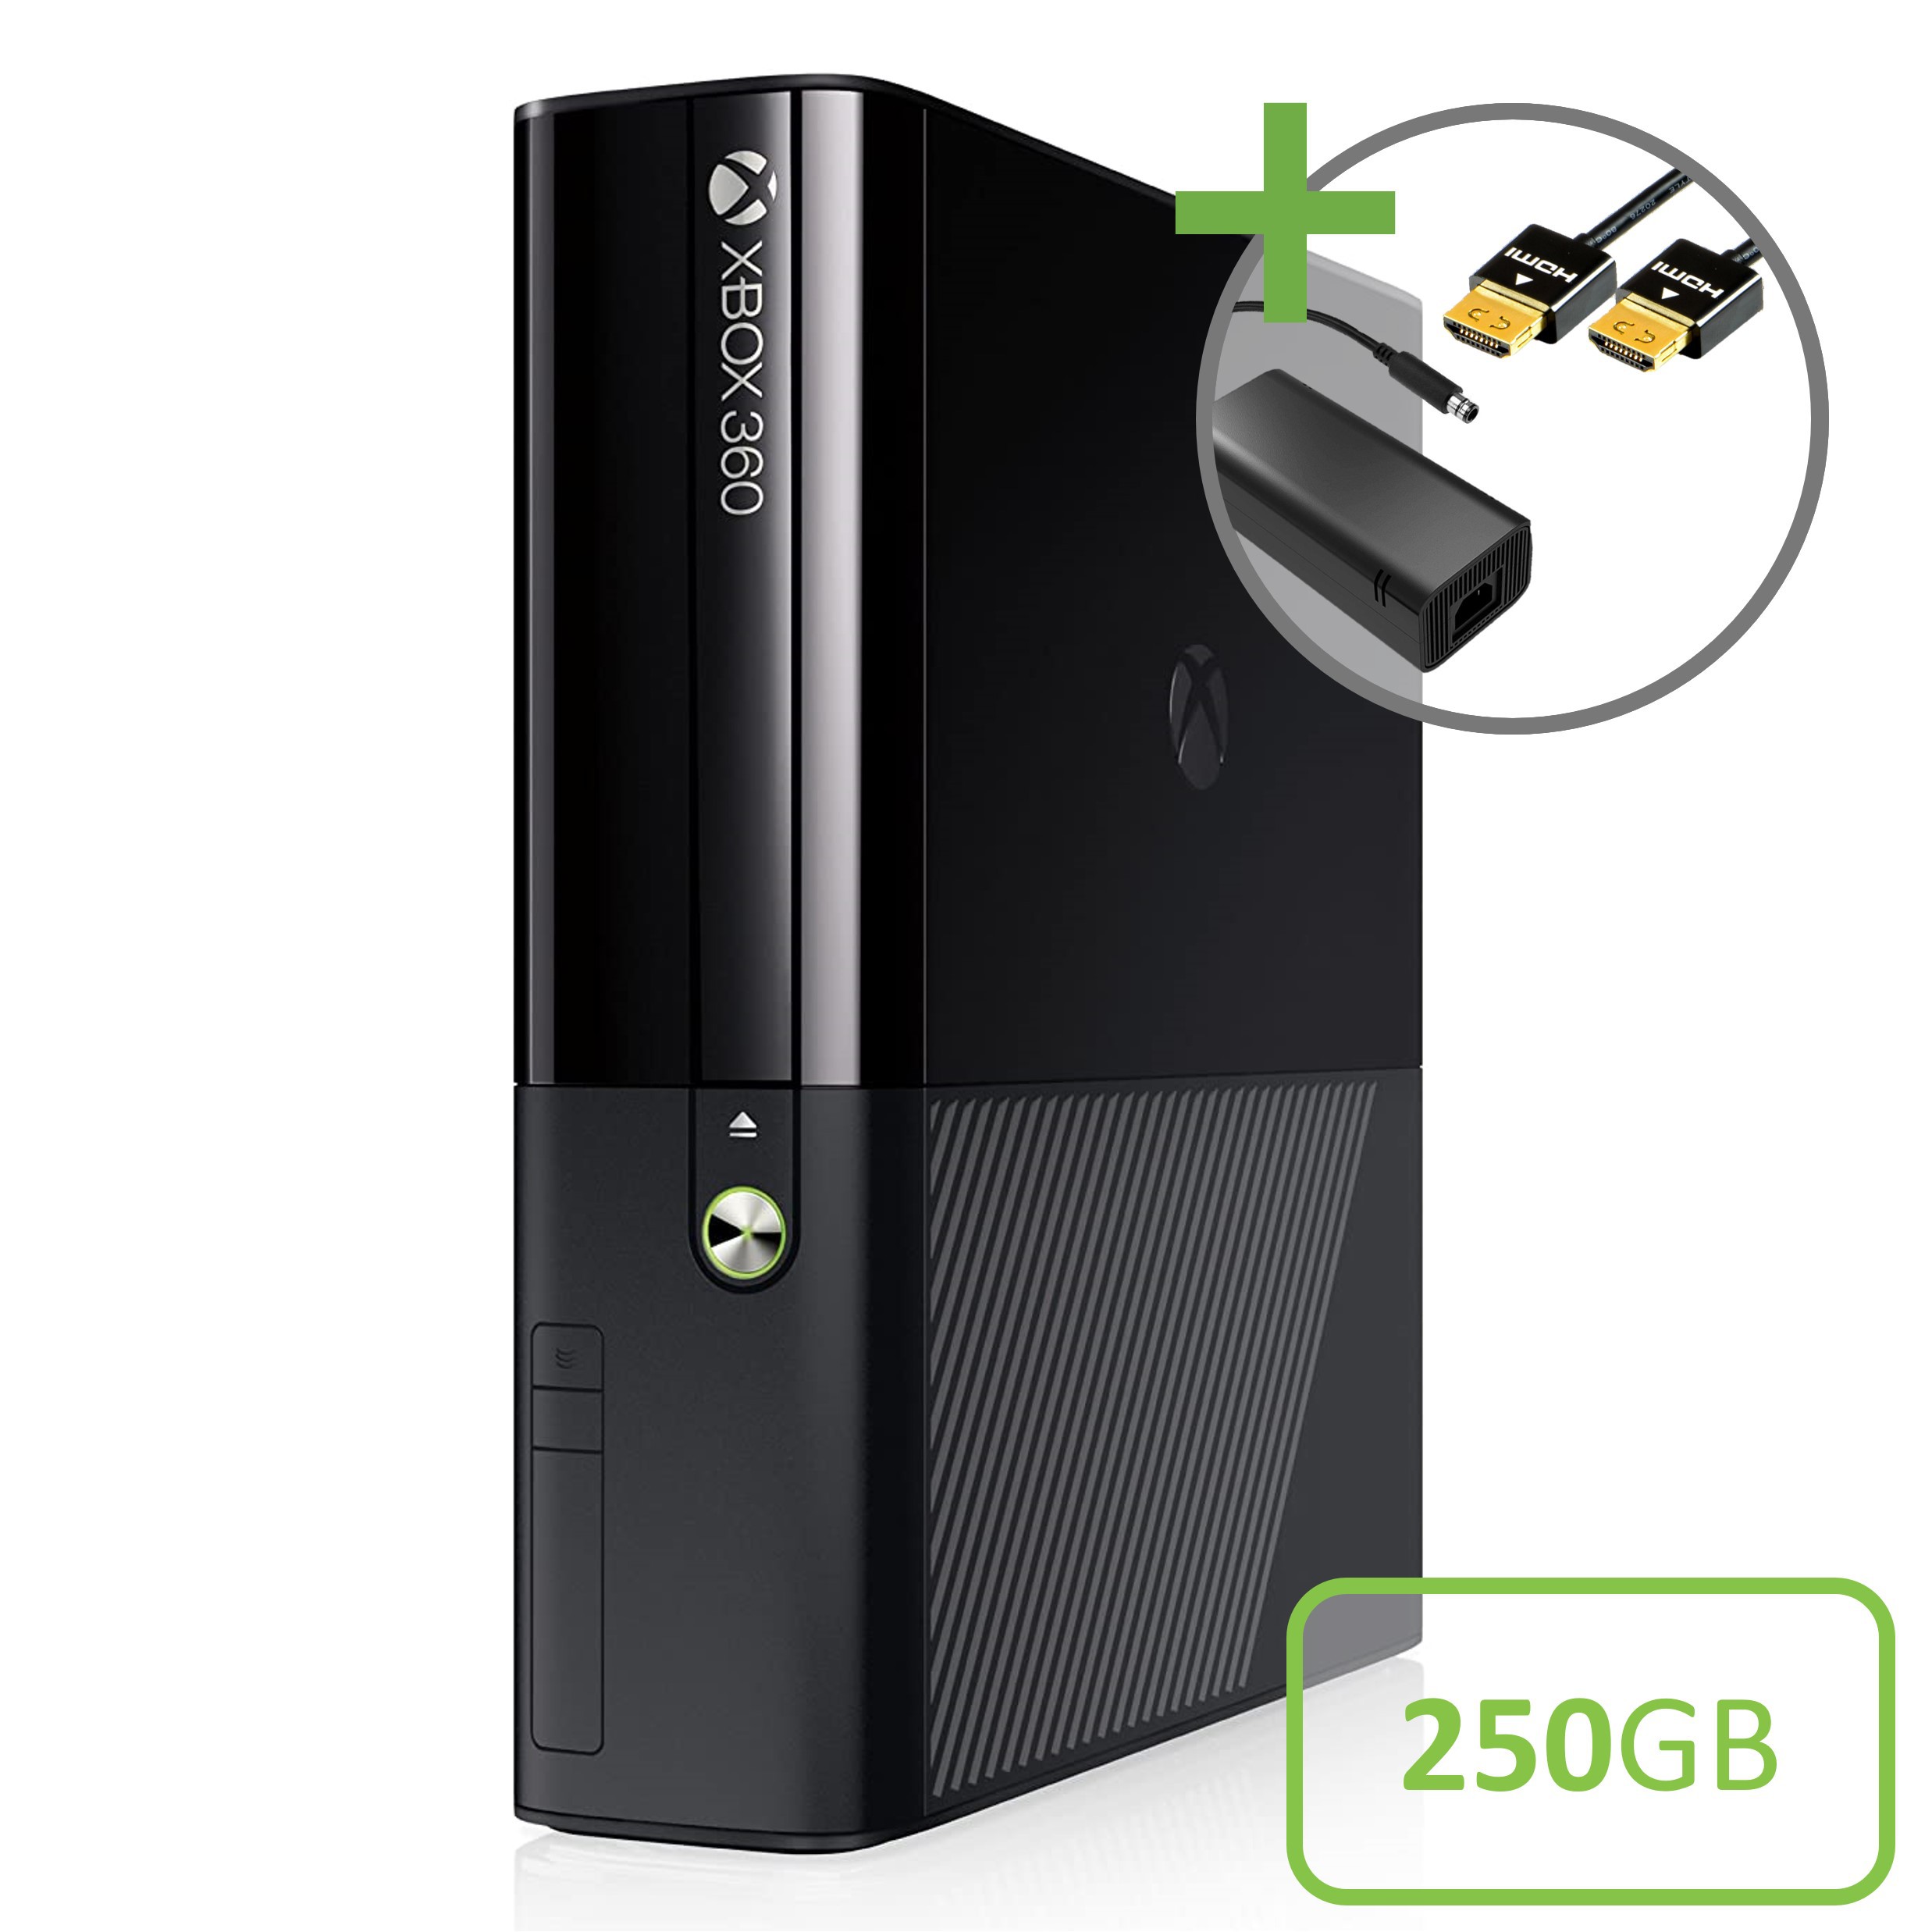 Microsoft Xbox 360 New Slim Console (250GB) Kopen | Xbox 360 Hardware